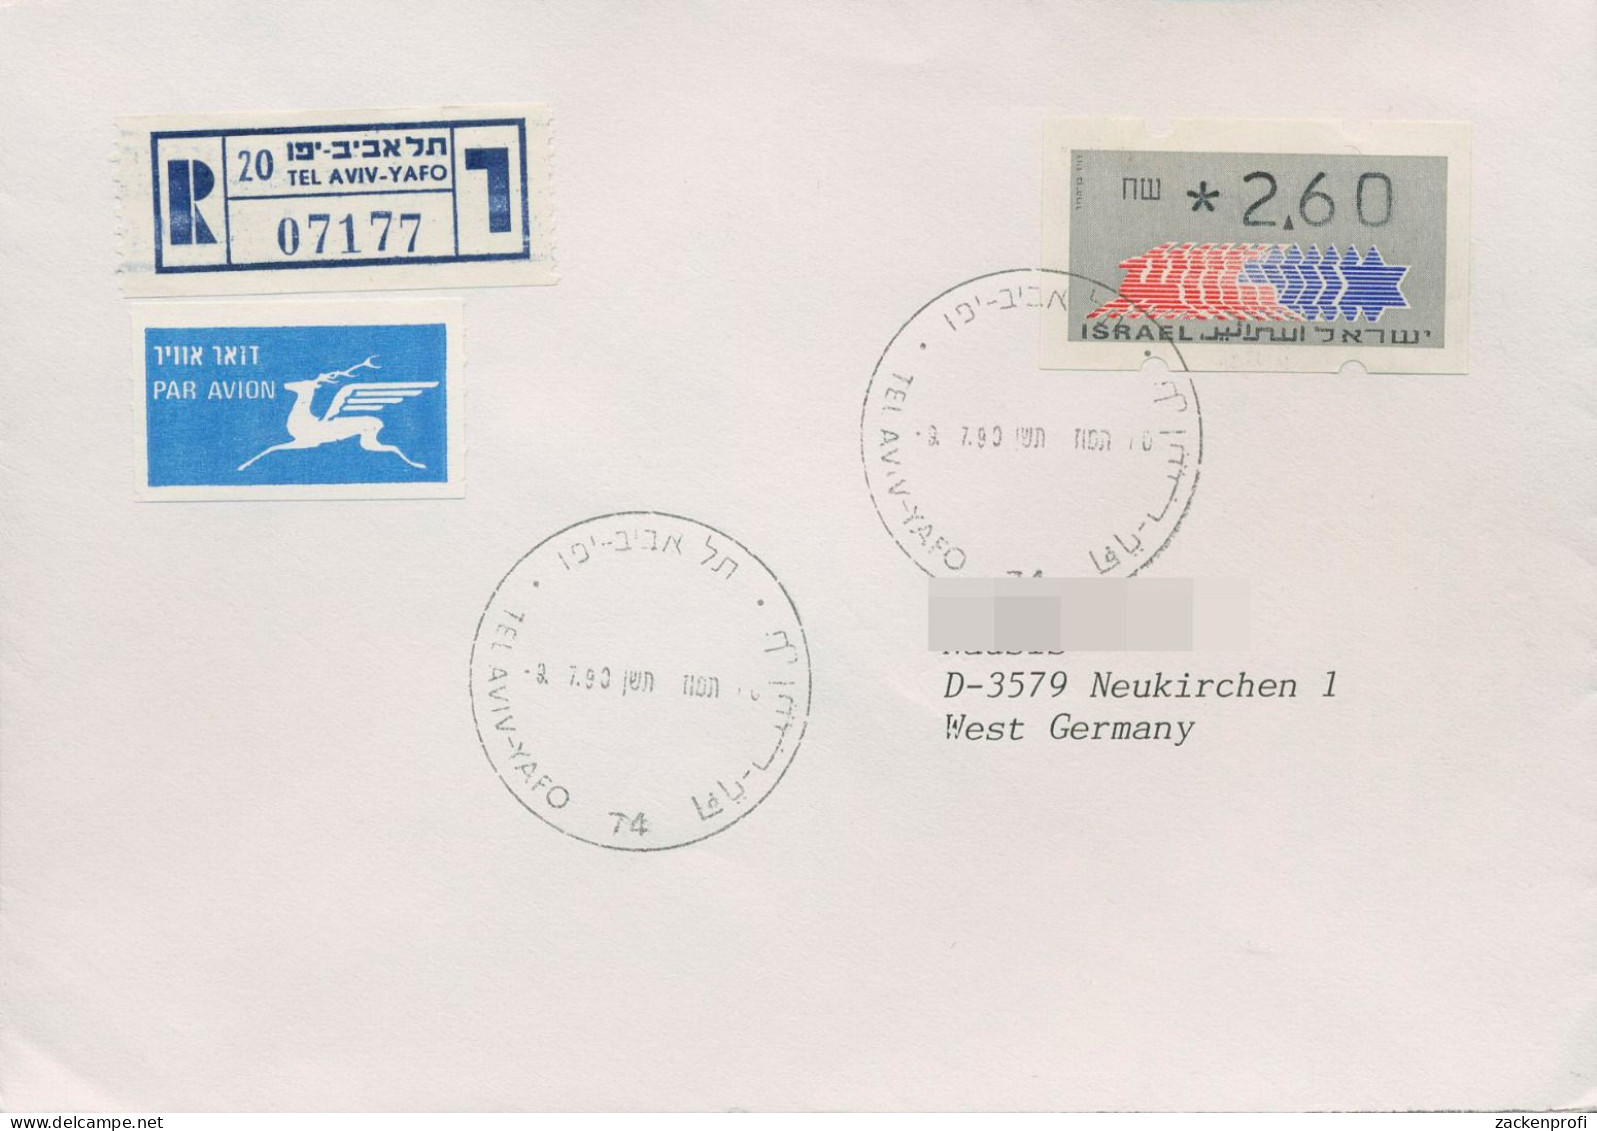 Israel ATM 1990 Hirsch Auf Luftpost-Einschreibebrief, ATM 2.1 EF (X80400) - Vignettes D'affranchissement (Frama)